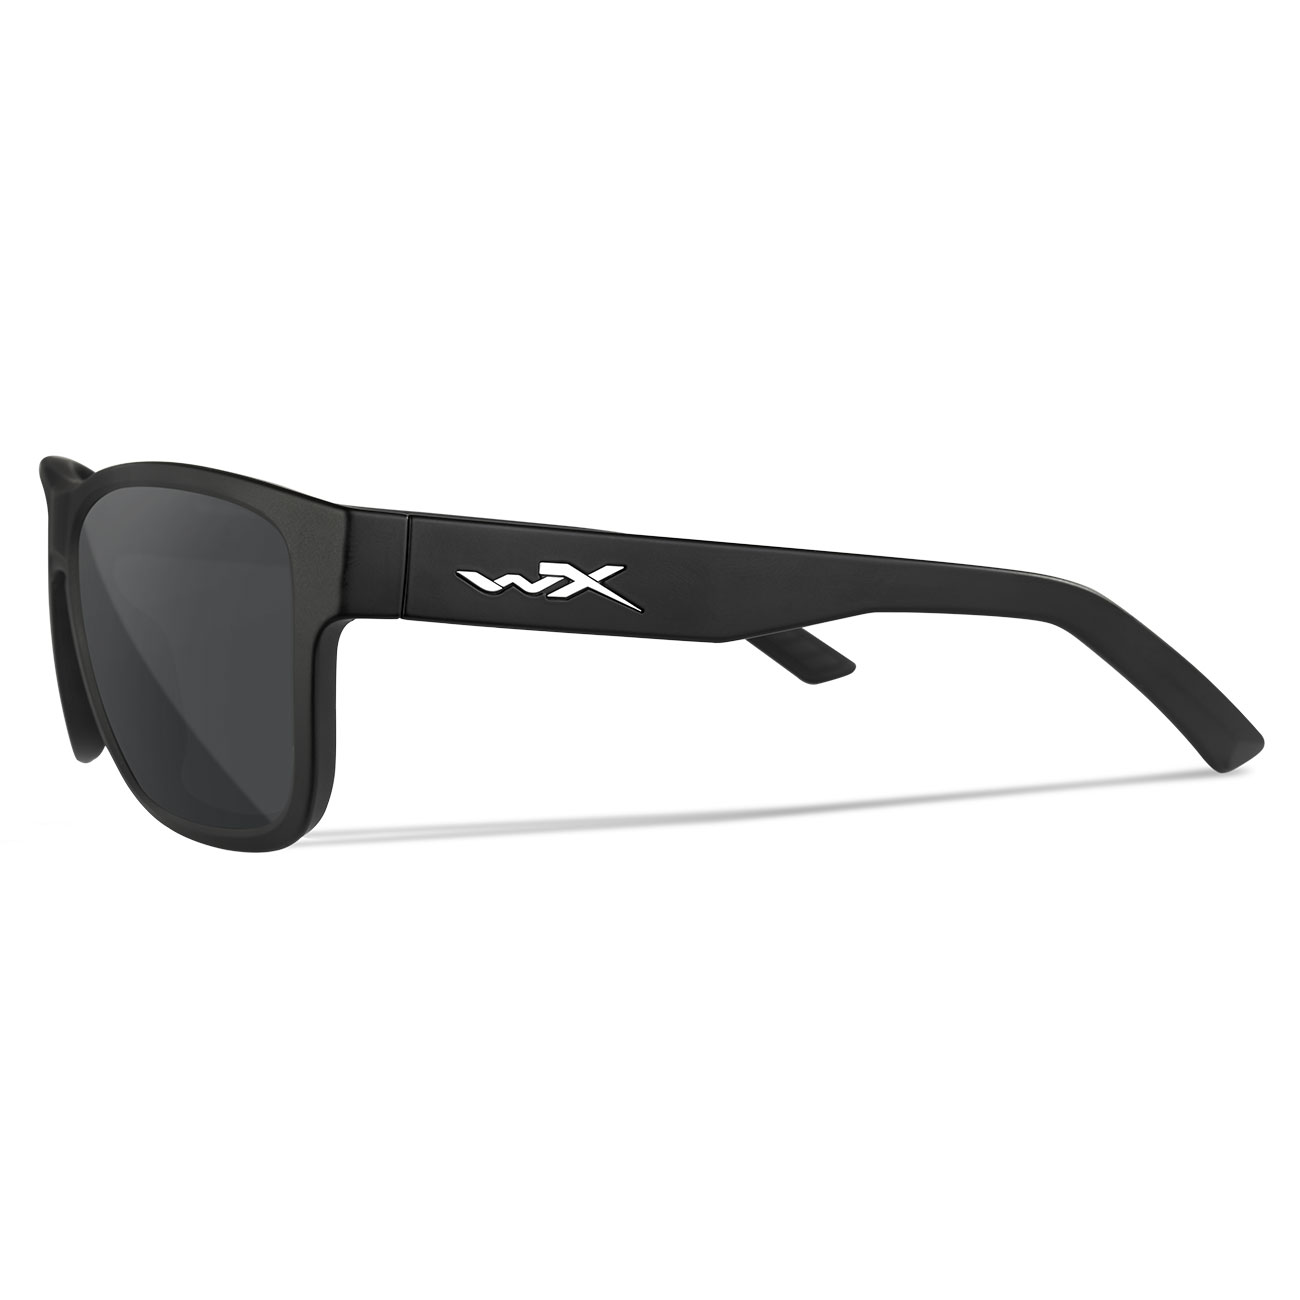 Wiley X Sonnenbrille Ovation matt schwarz Glser grau inkl. Brillenetui und Seitenschutz Bild 2